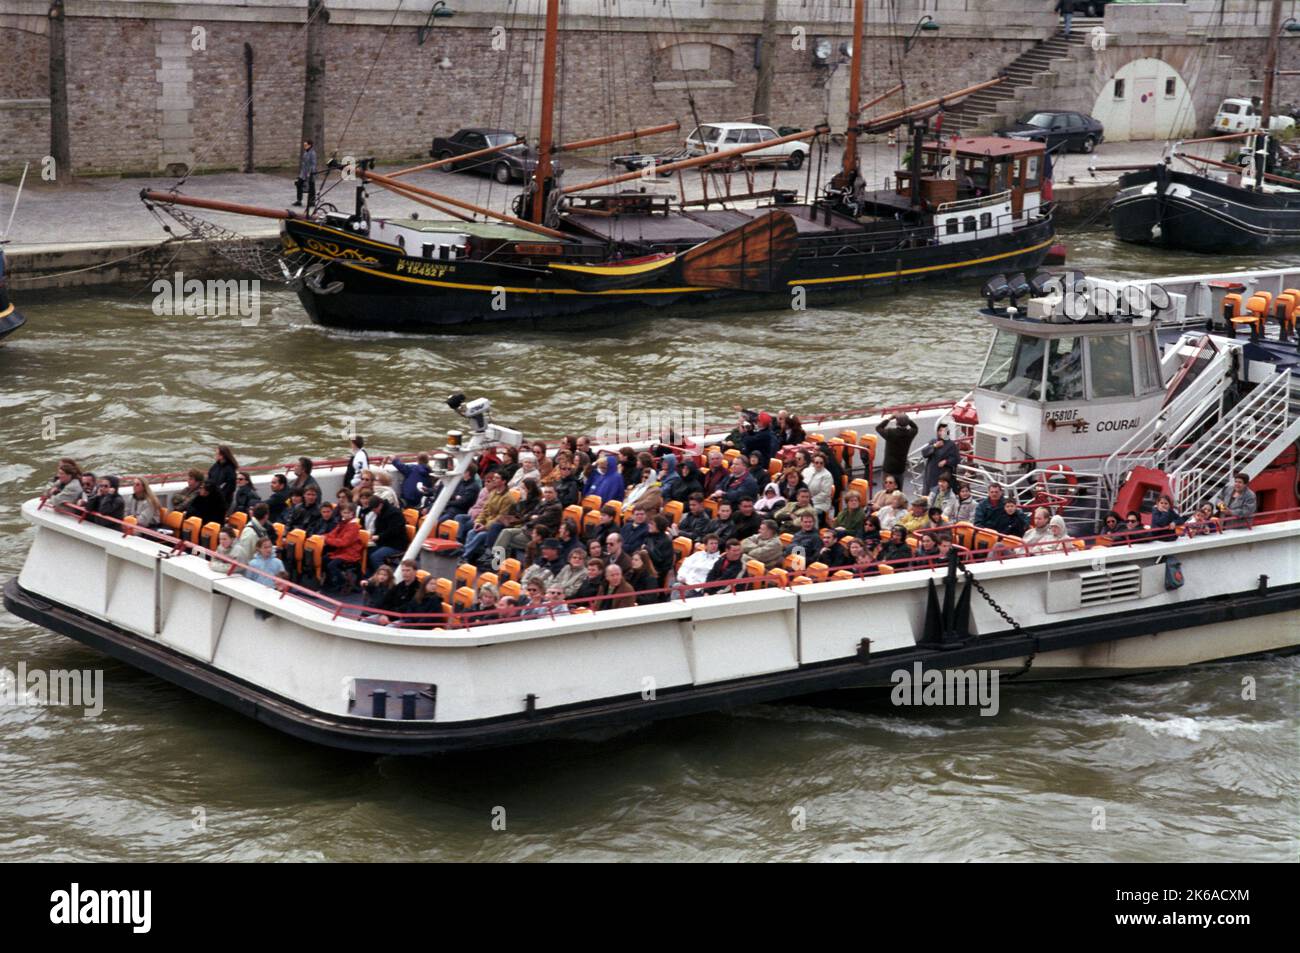 Ein Ausflugsboot zur bateau mouche bringt Passagiere auf der seine in Paris, Frankreich. Stockfoto